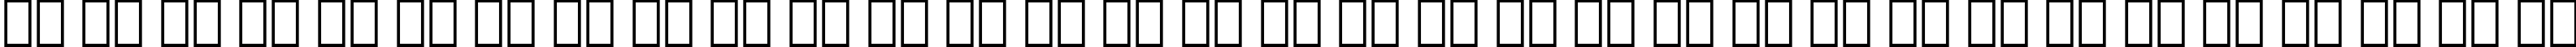 Пример написания русского алфавита шрифтом Schadow BT